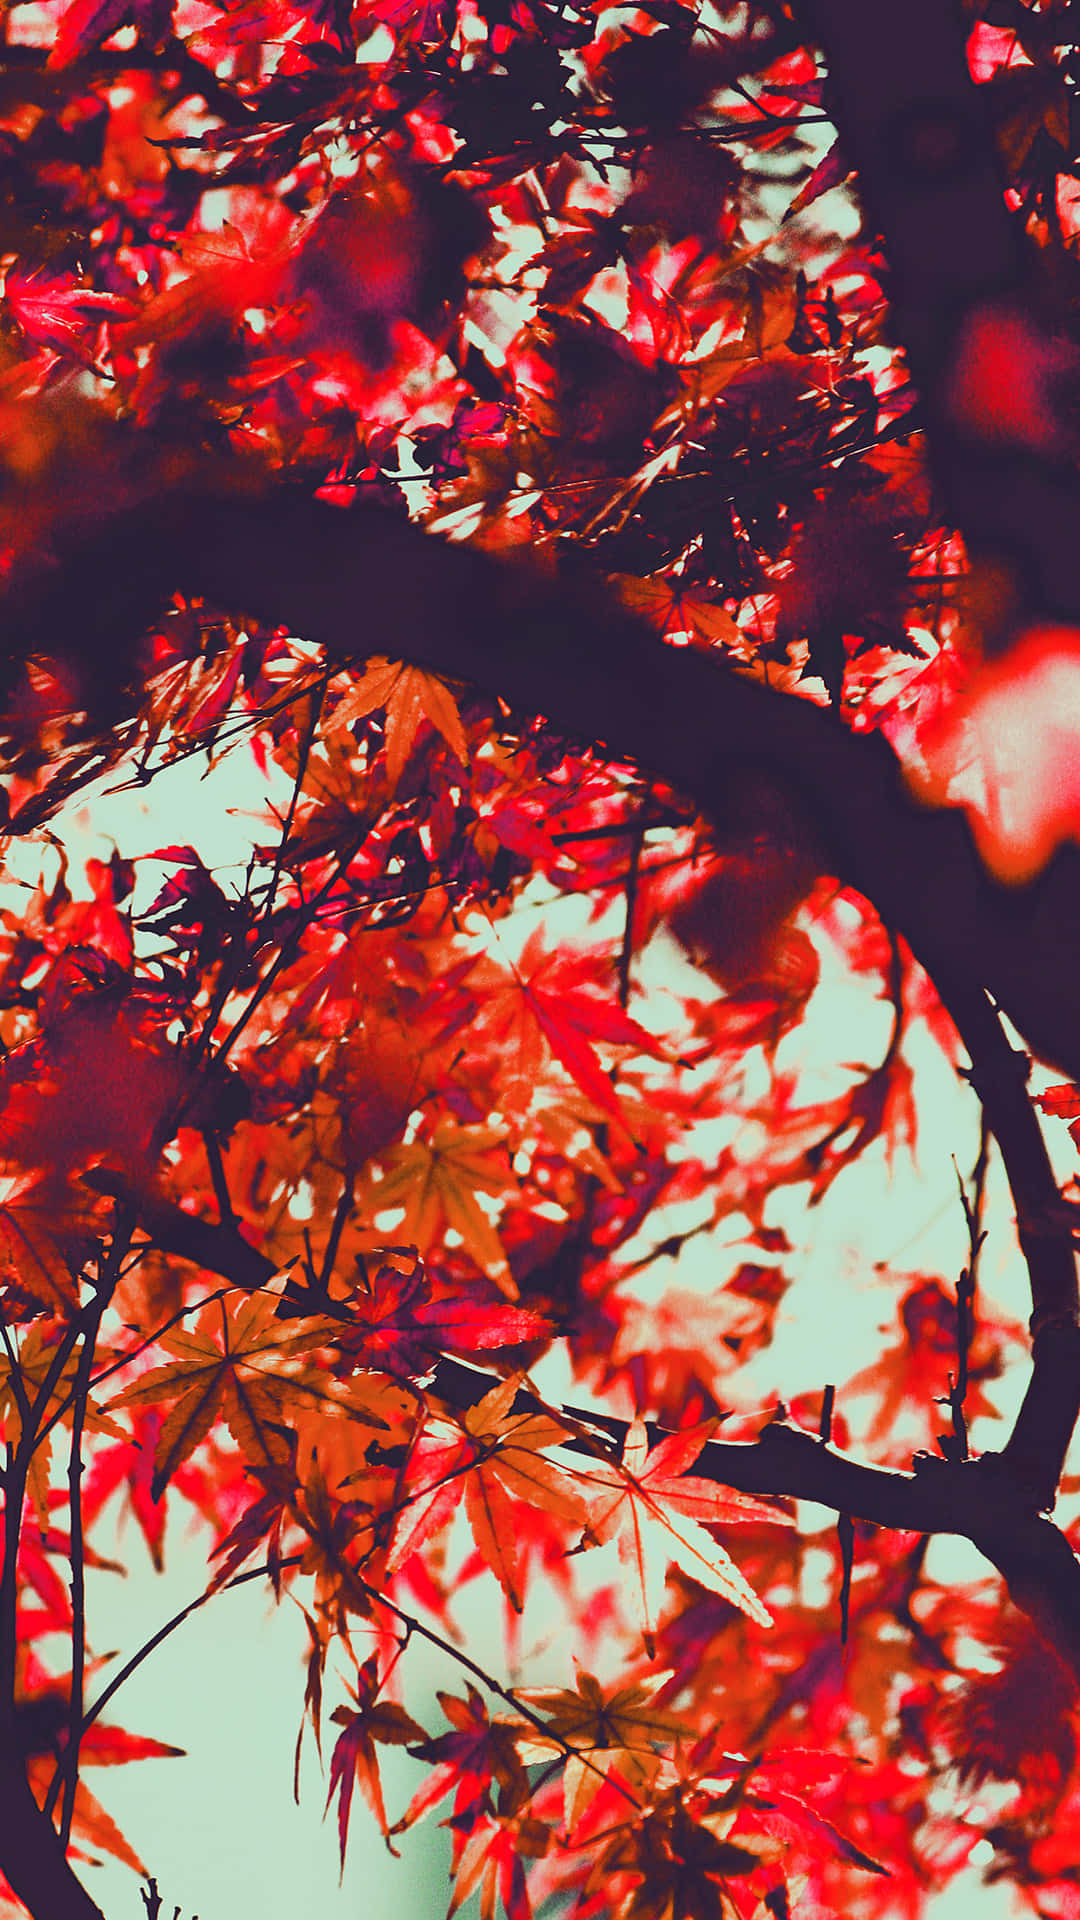 Nếu bạn muốn cảm thấy hứng khởi với điện thoại iPhone 6 của mình, hãy khám phá bộ sưu tập hình ảnh với chủ đề Autumn iPhone 6 Plus Wallpaper. Tất cả các bức hình đều đầy sức sống và sắc màu, mang đến cho bạn cảm giác như đang bước vào một bức tranh mùa thu đầy mơ mộng.